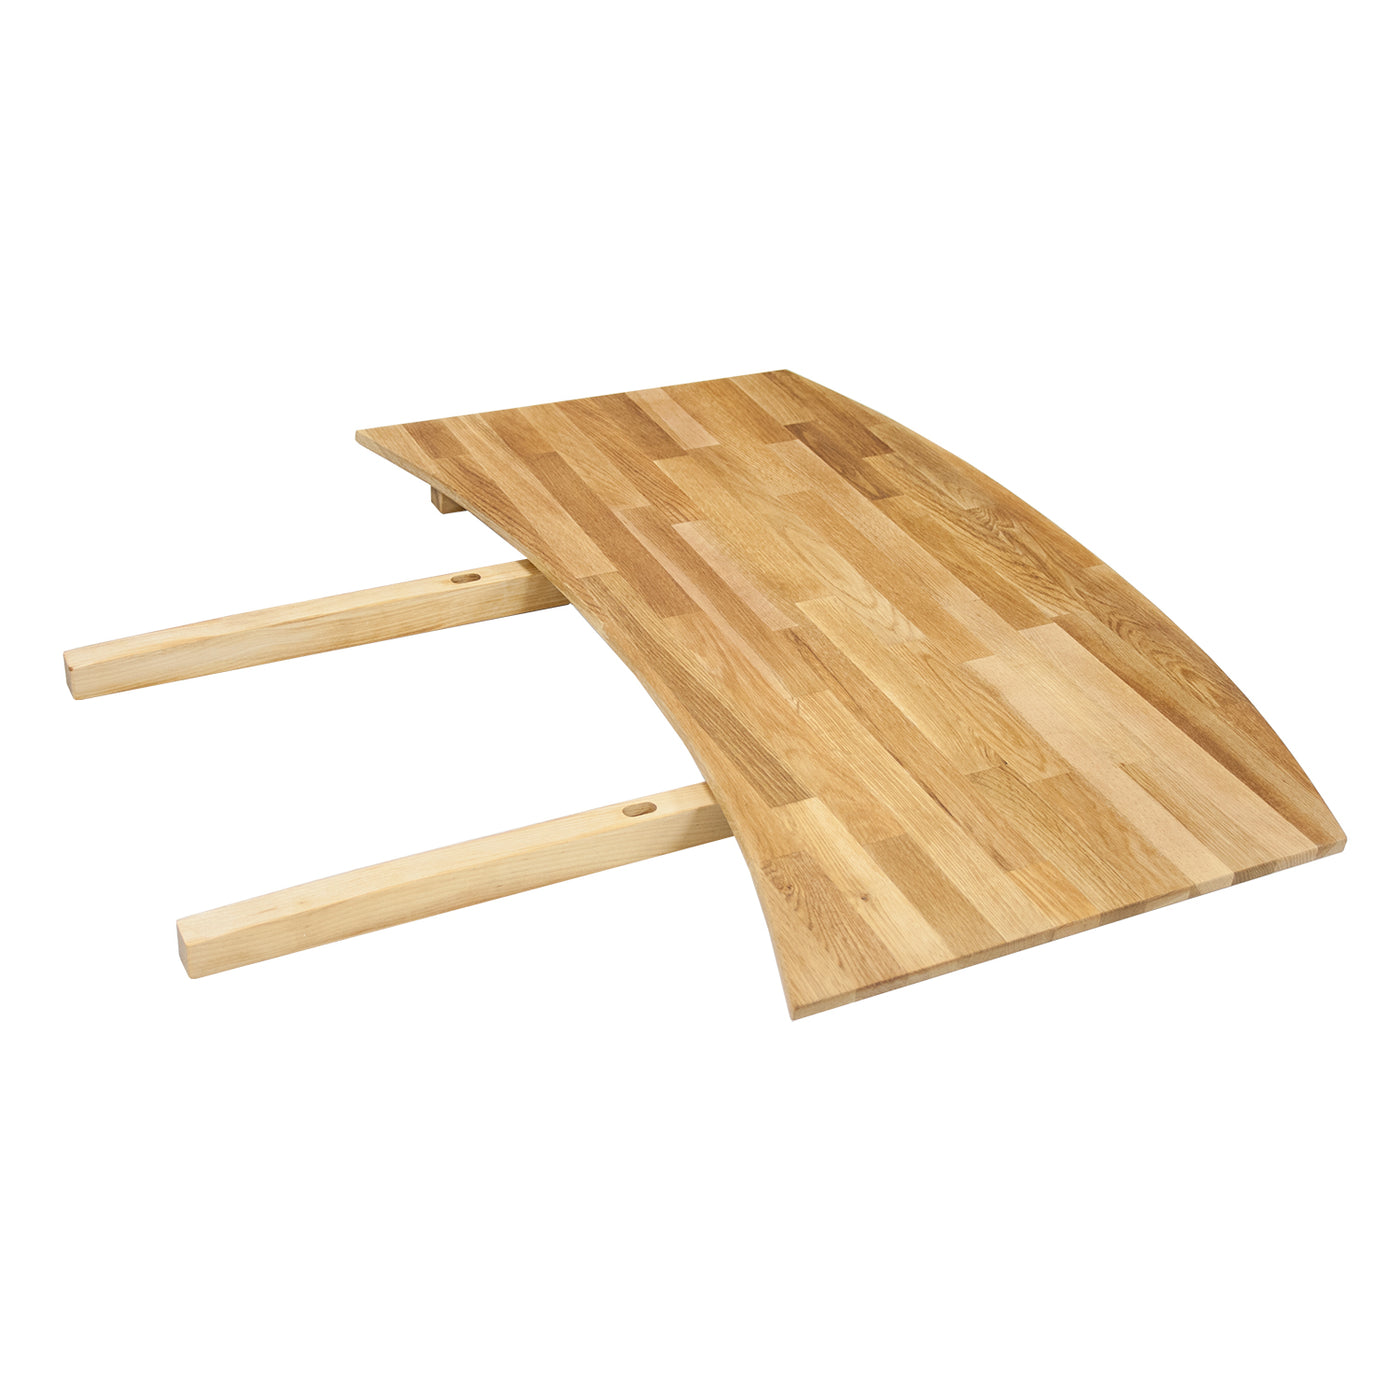 Retro tammipöydän jatkopala 50x76 cm - Mööpeli.com